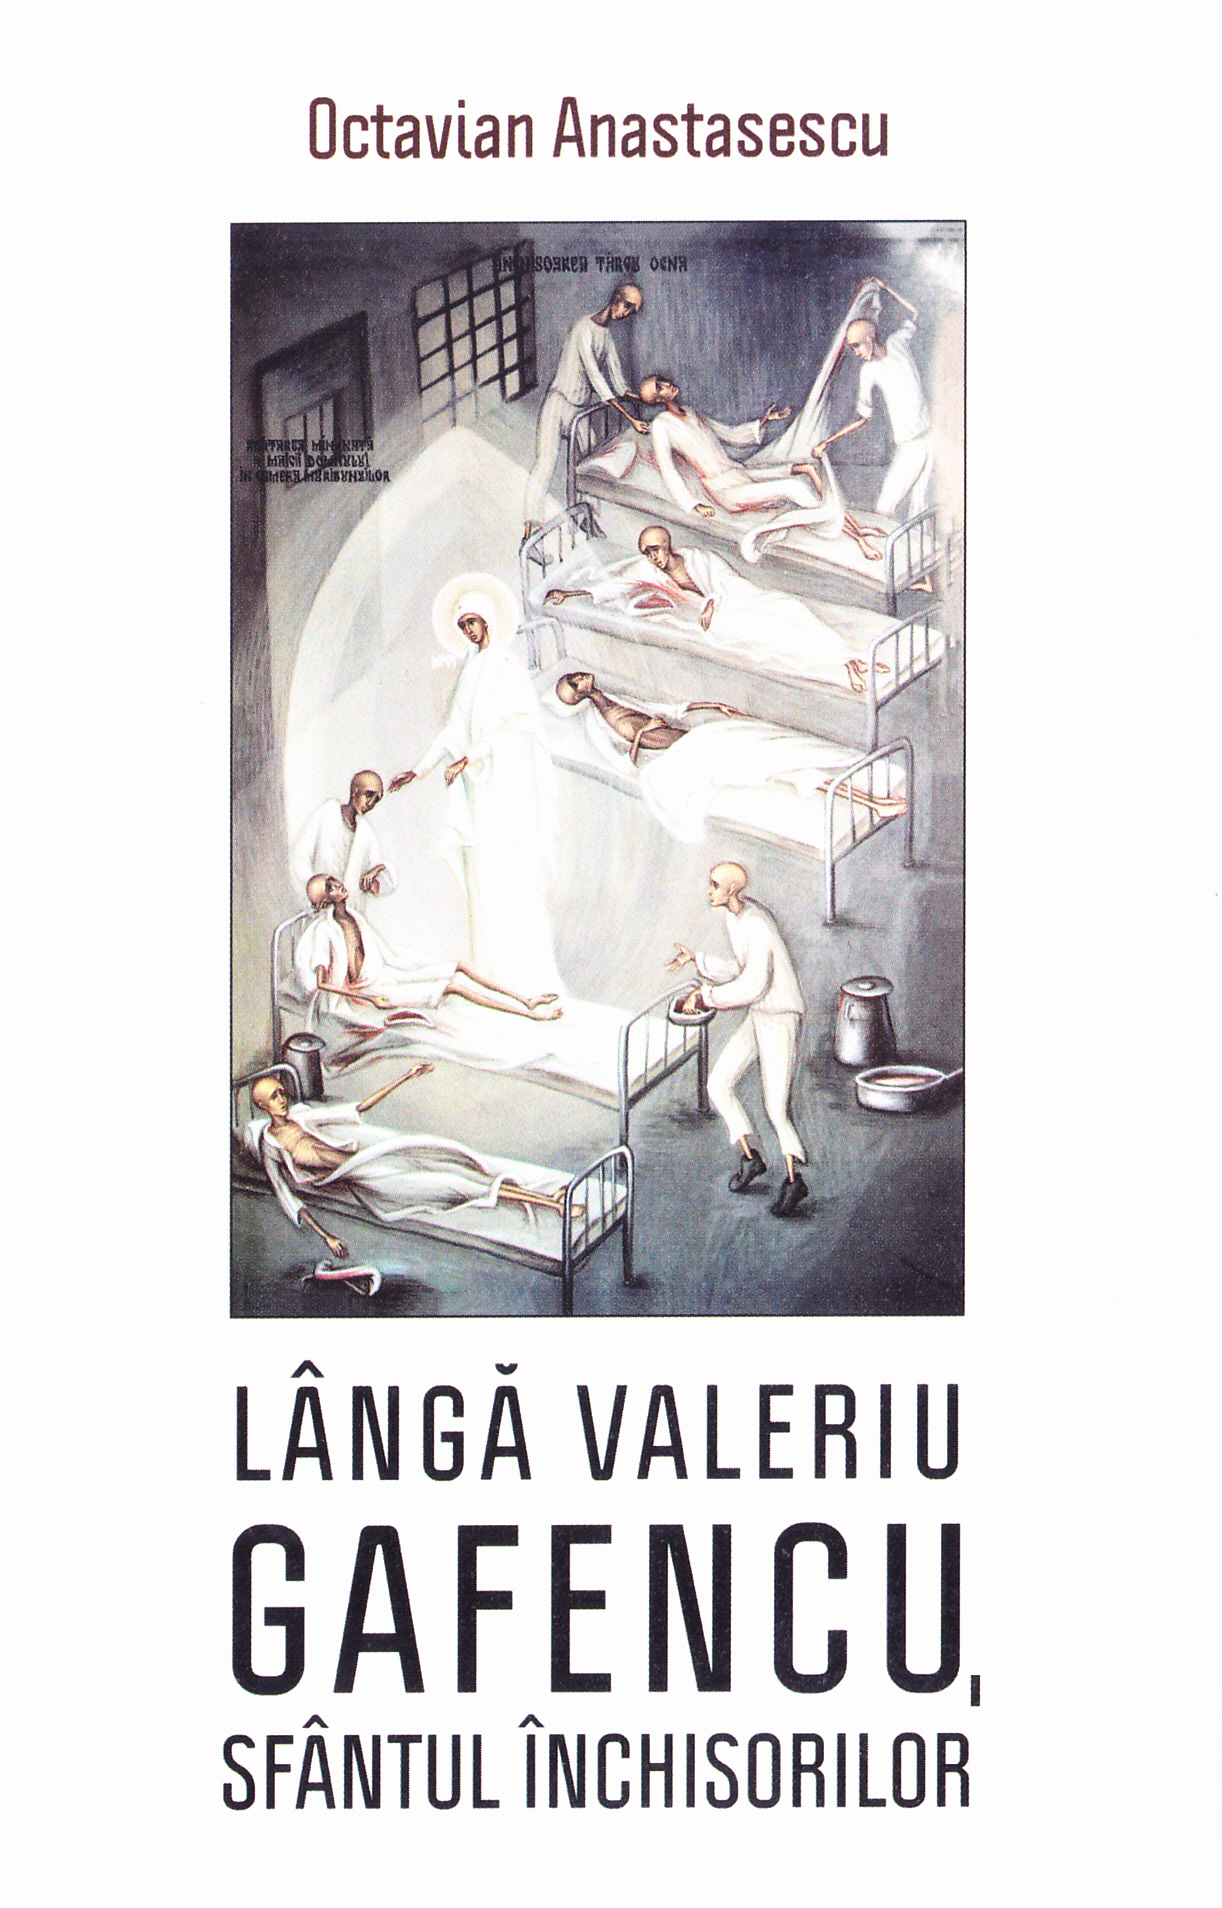 Langa Valeriu Gafencu, Sfantul inchisorilor ed.3 - Octavian Anastasescu